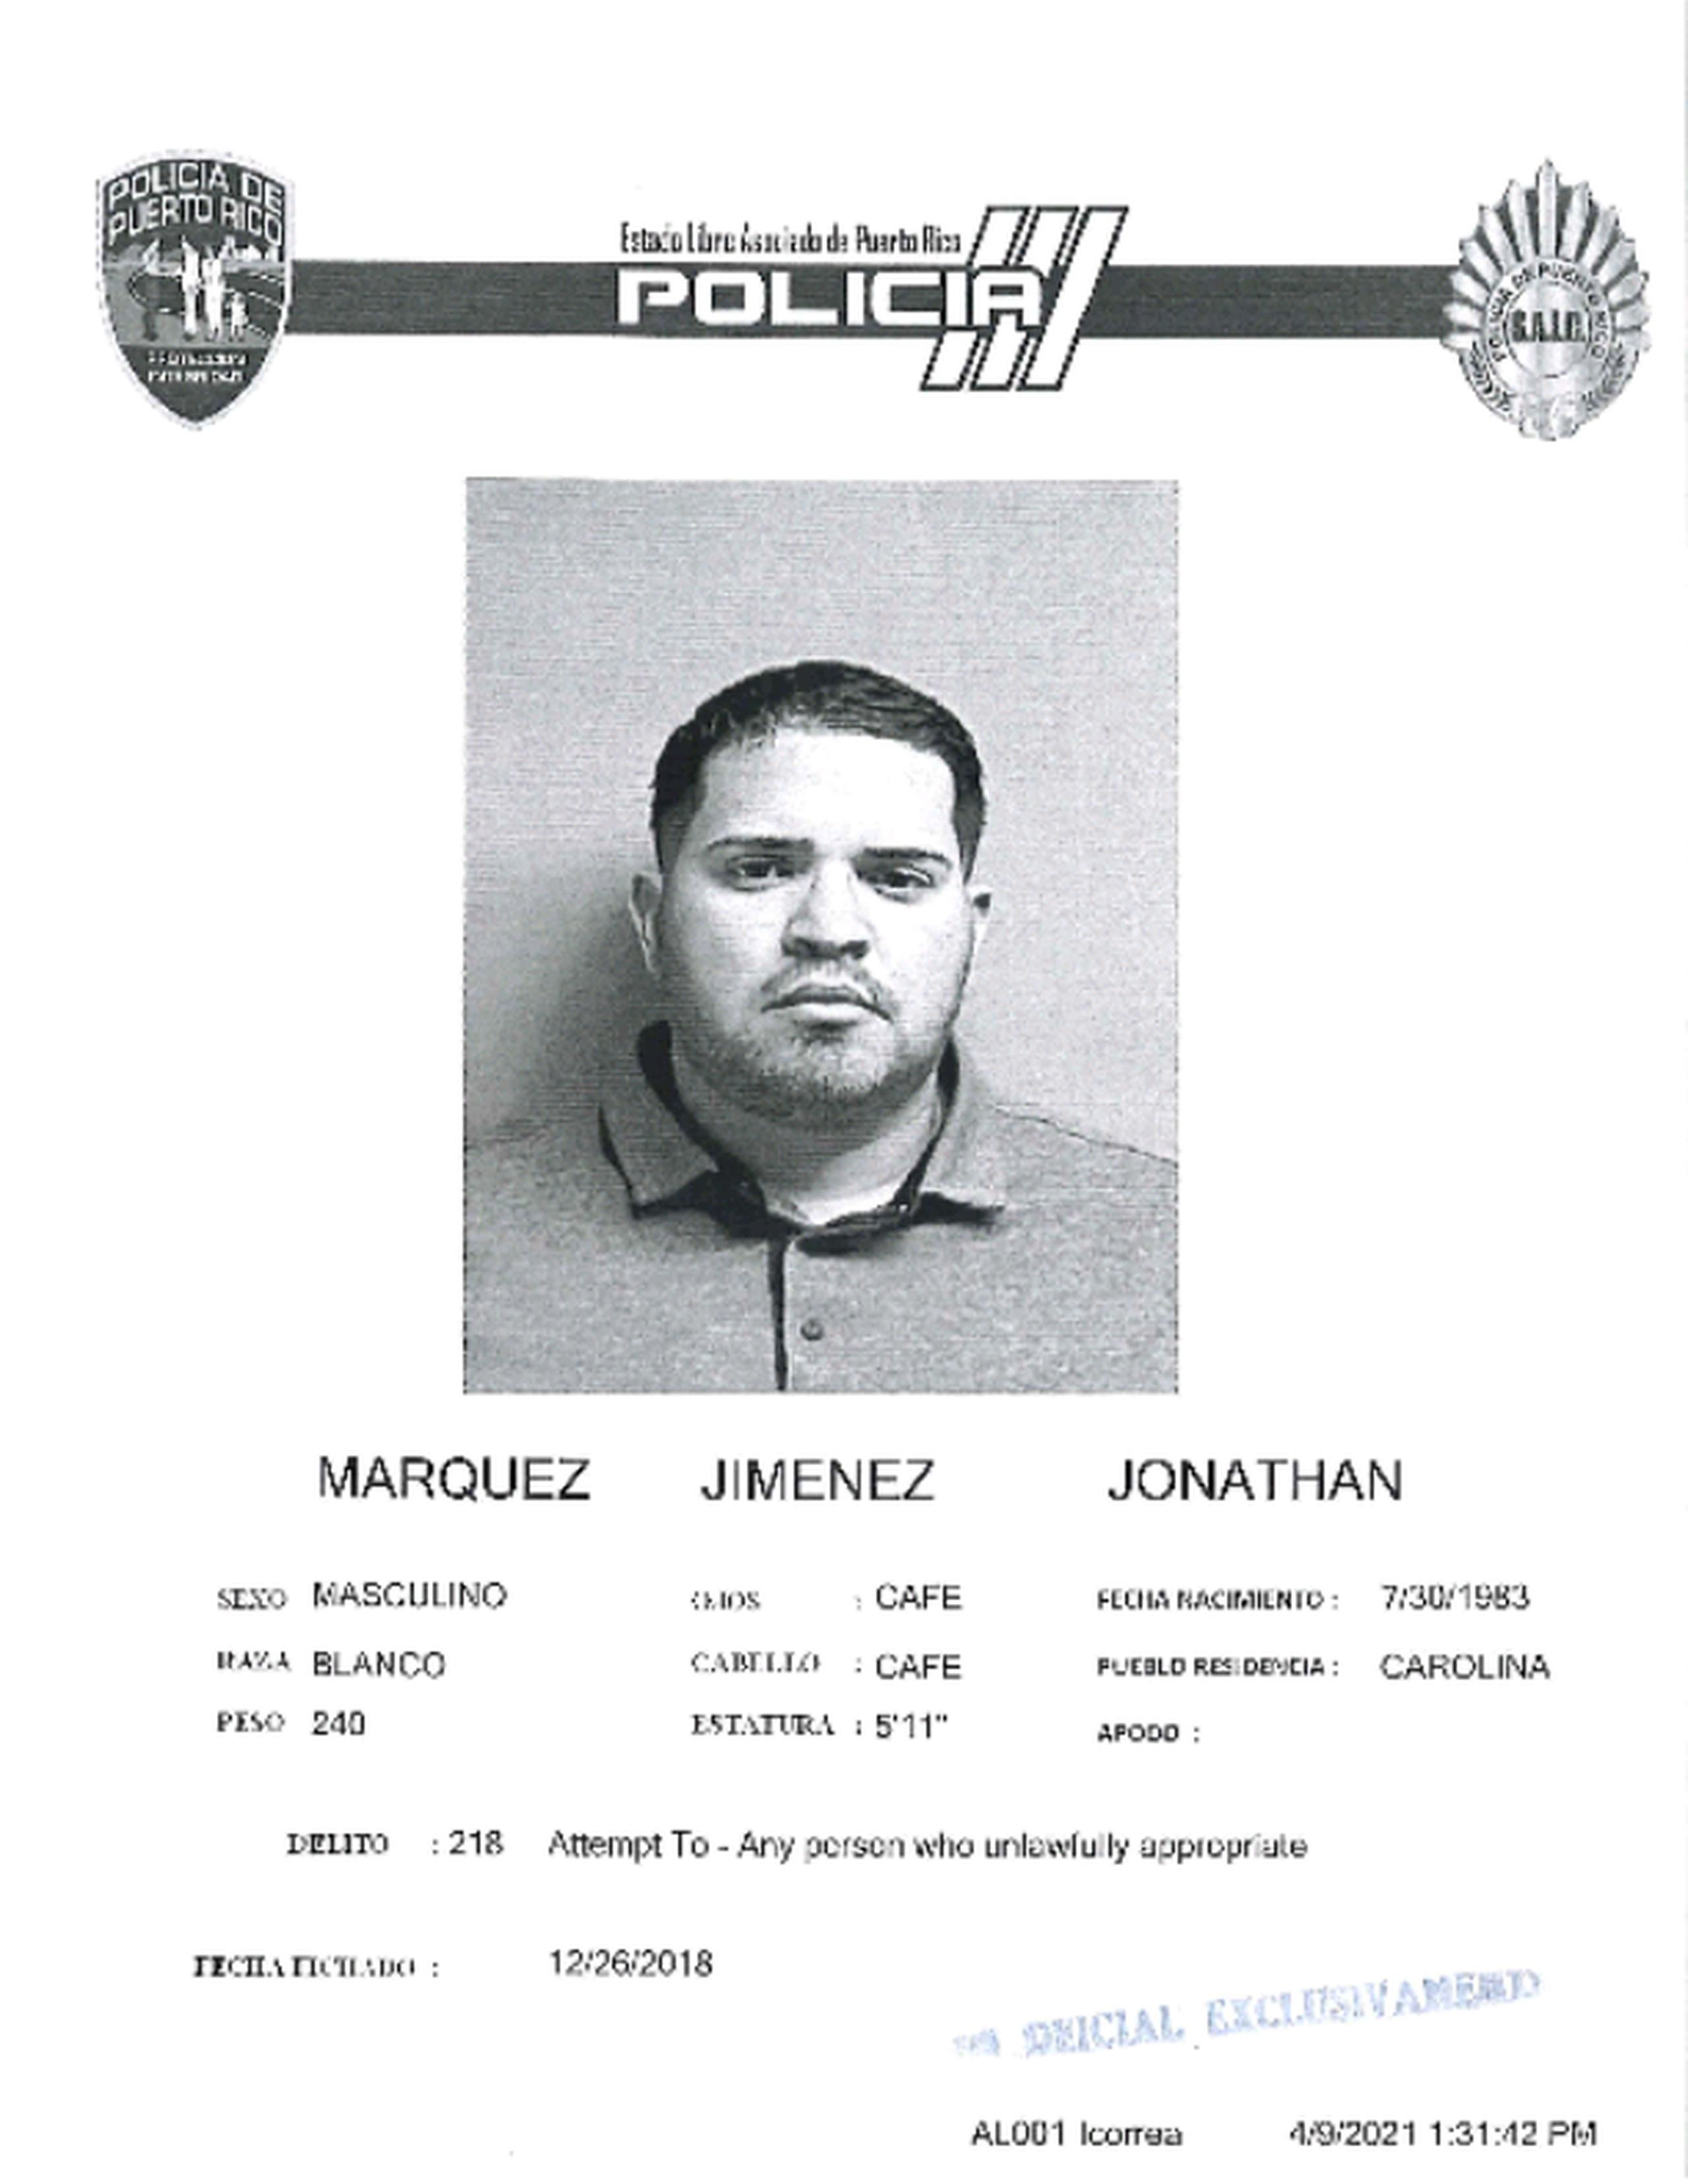 Jonathan Márquez Jiménez, quien figuraba como el primero en la lista de Los Más Buscados por los Alguaciles de la Región Judicial de Carolina, fue arrestado en el Hospital Universitario.